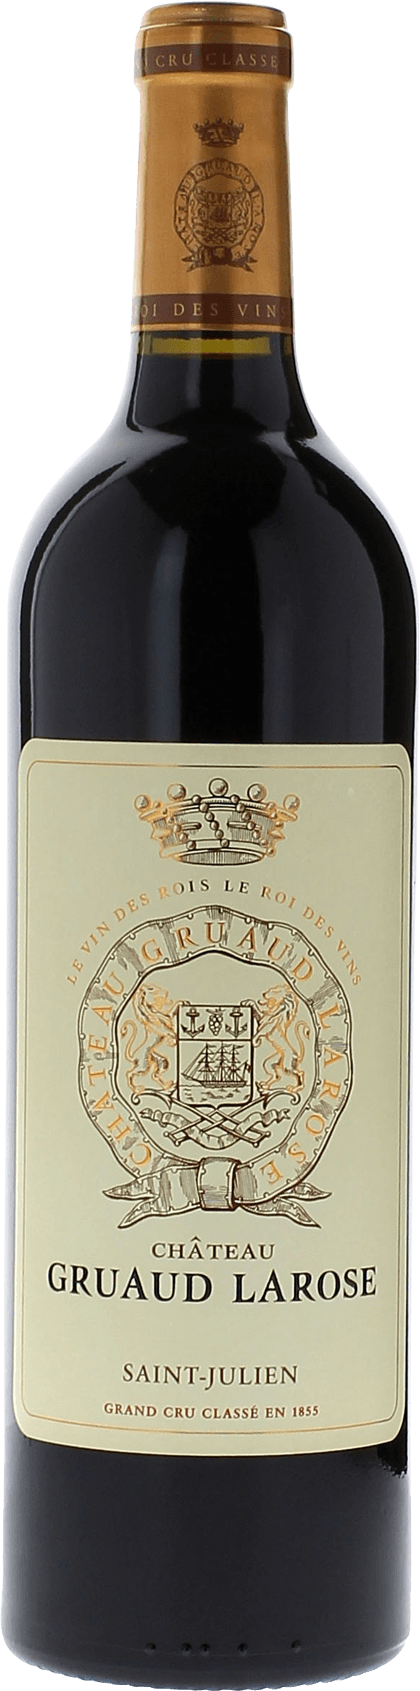 Gruaud larose ex chteau 1989 2me Grand cru class Saint-Julien, Bordeaux rouge